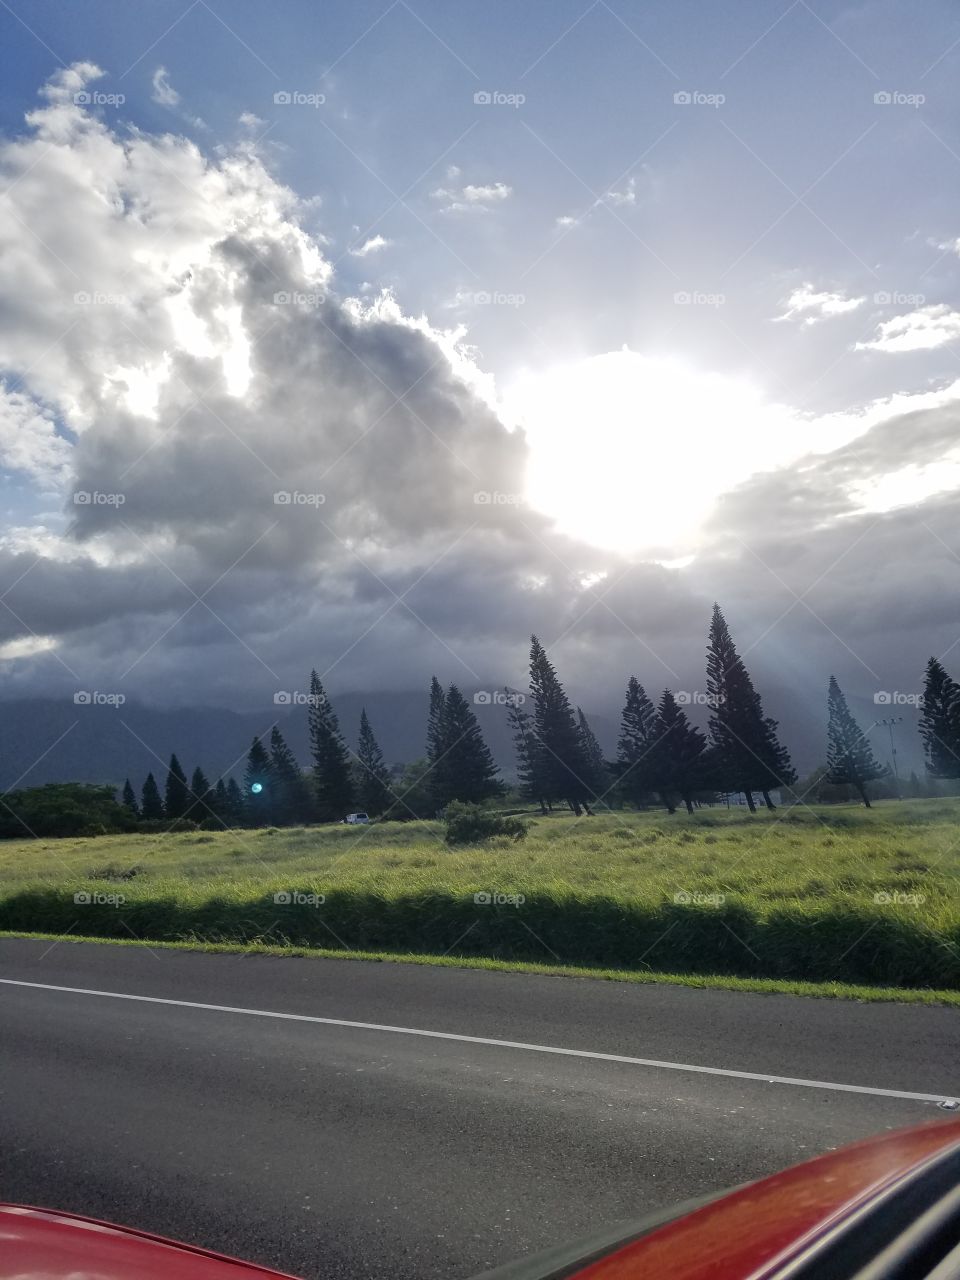 Hawaii sky